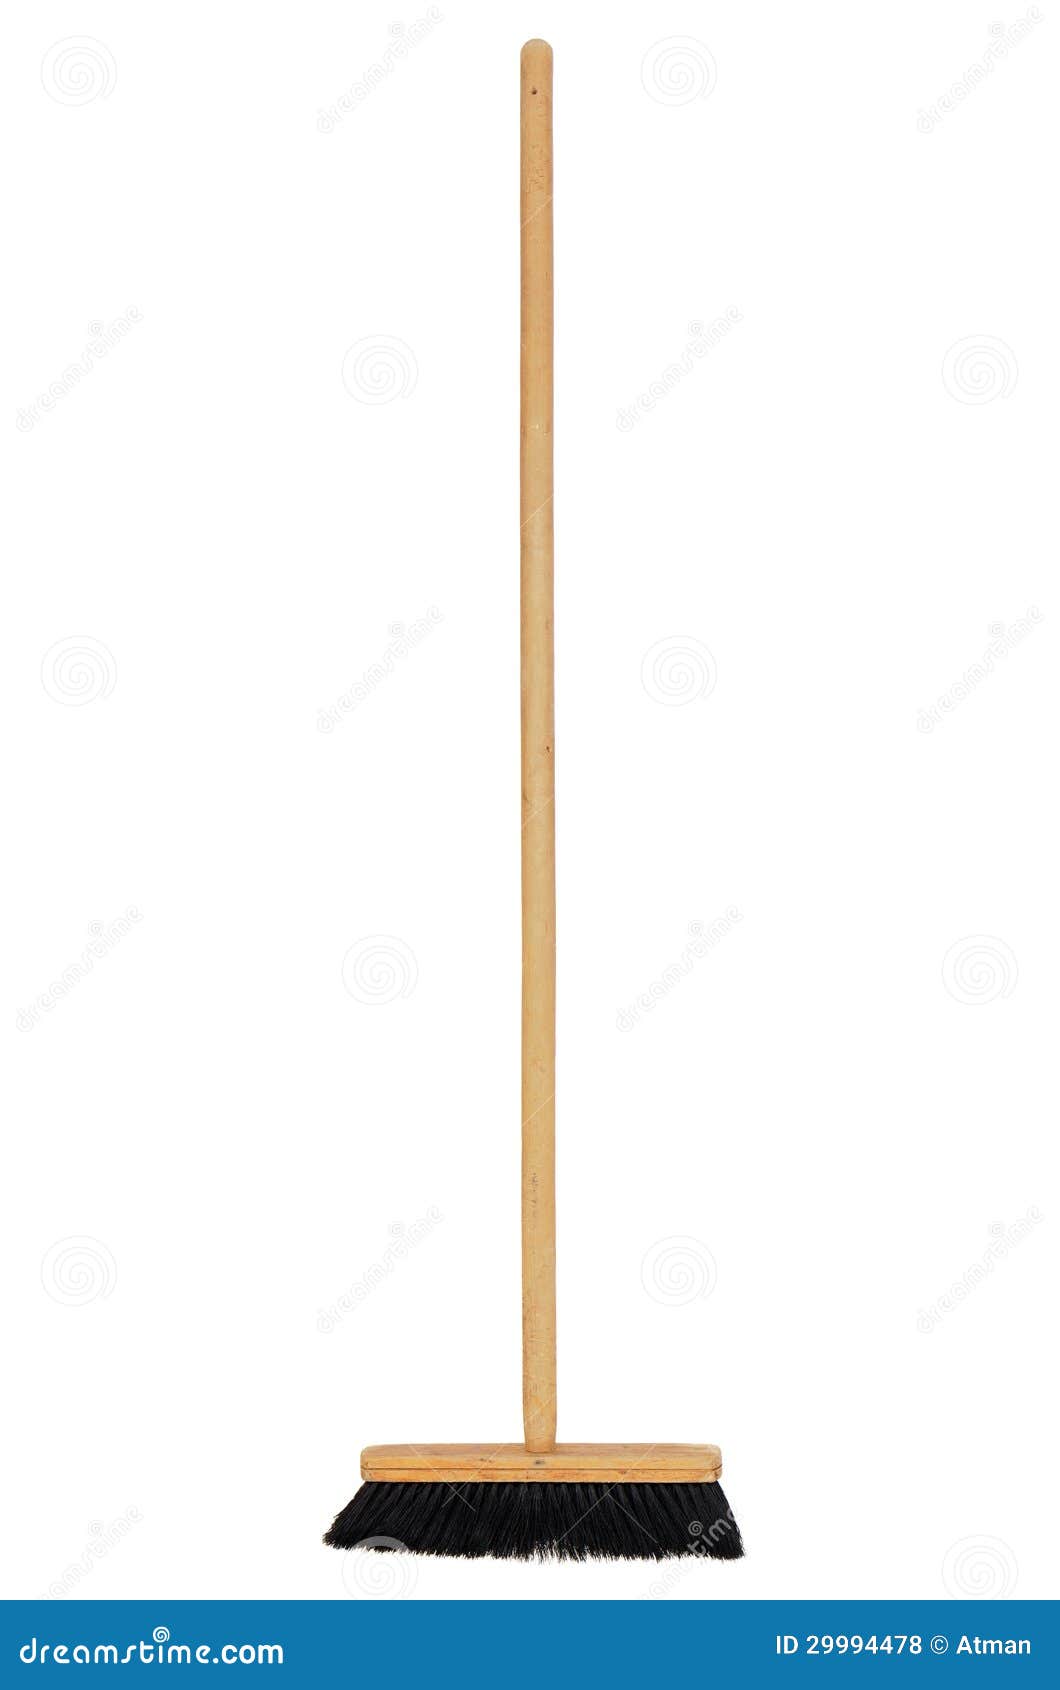 wooden broom